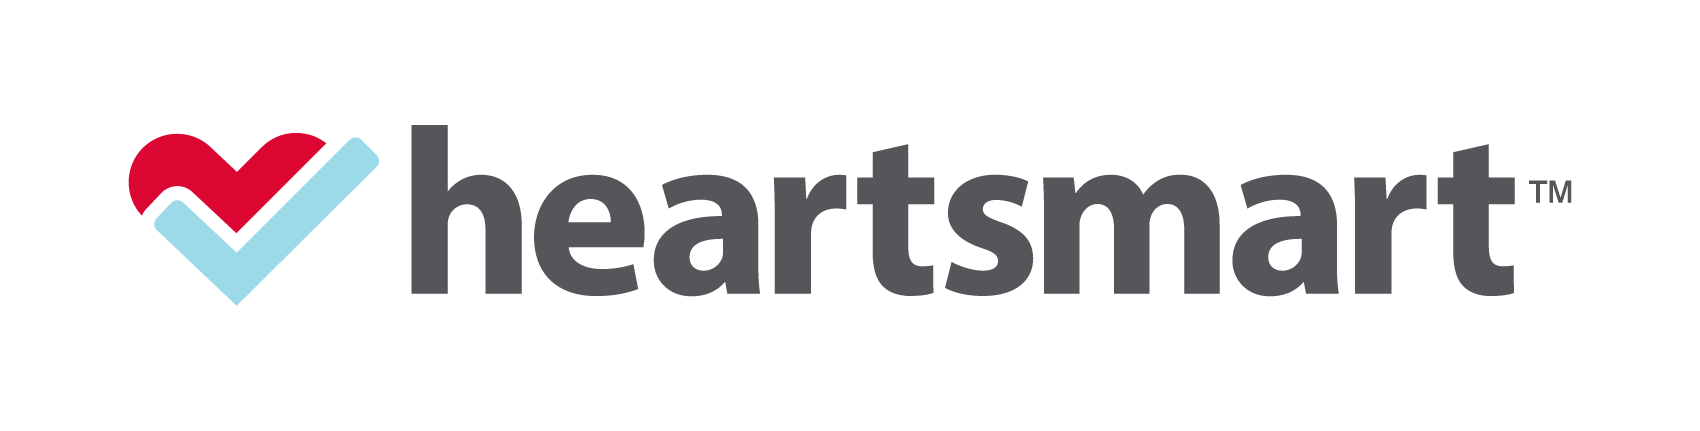 heartsmart-logo_.png